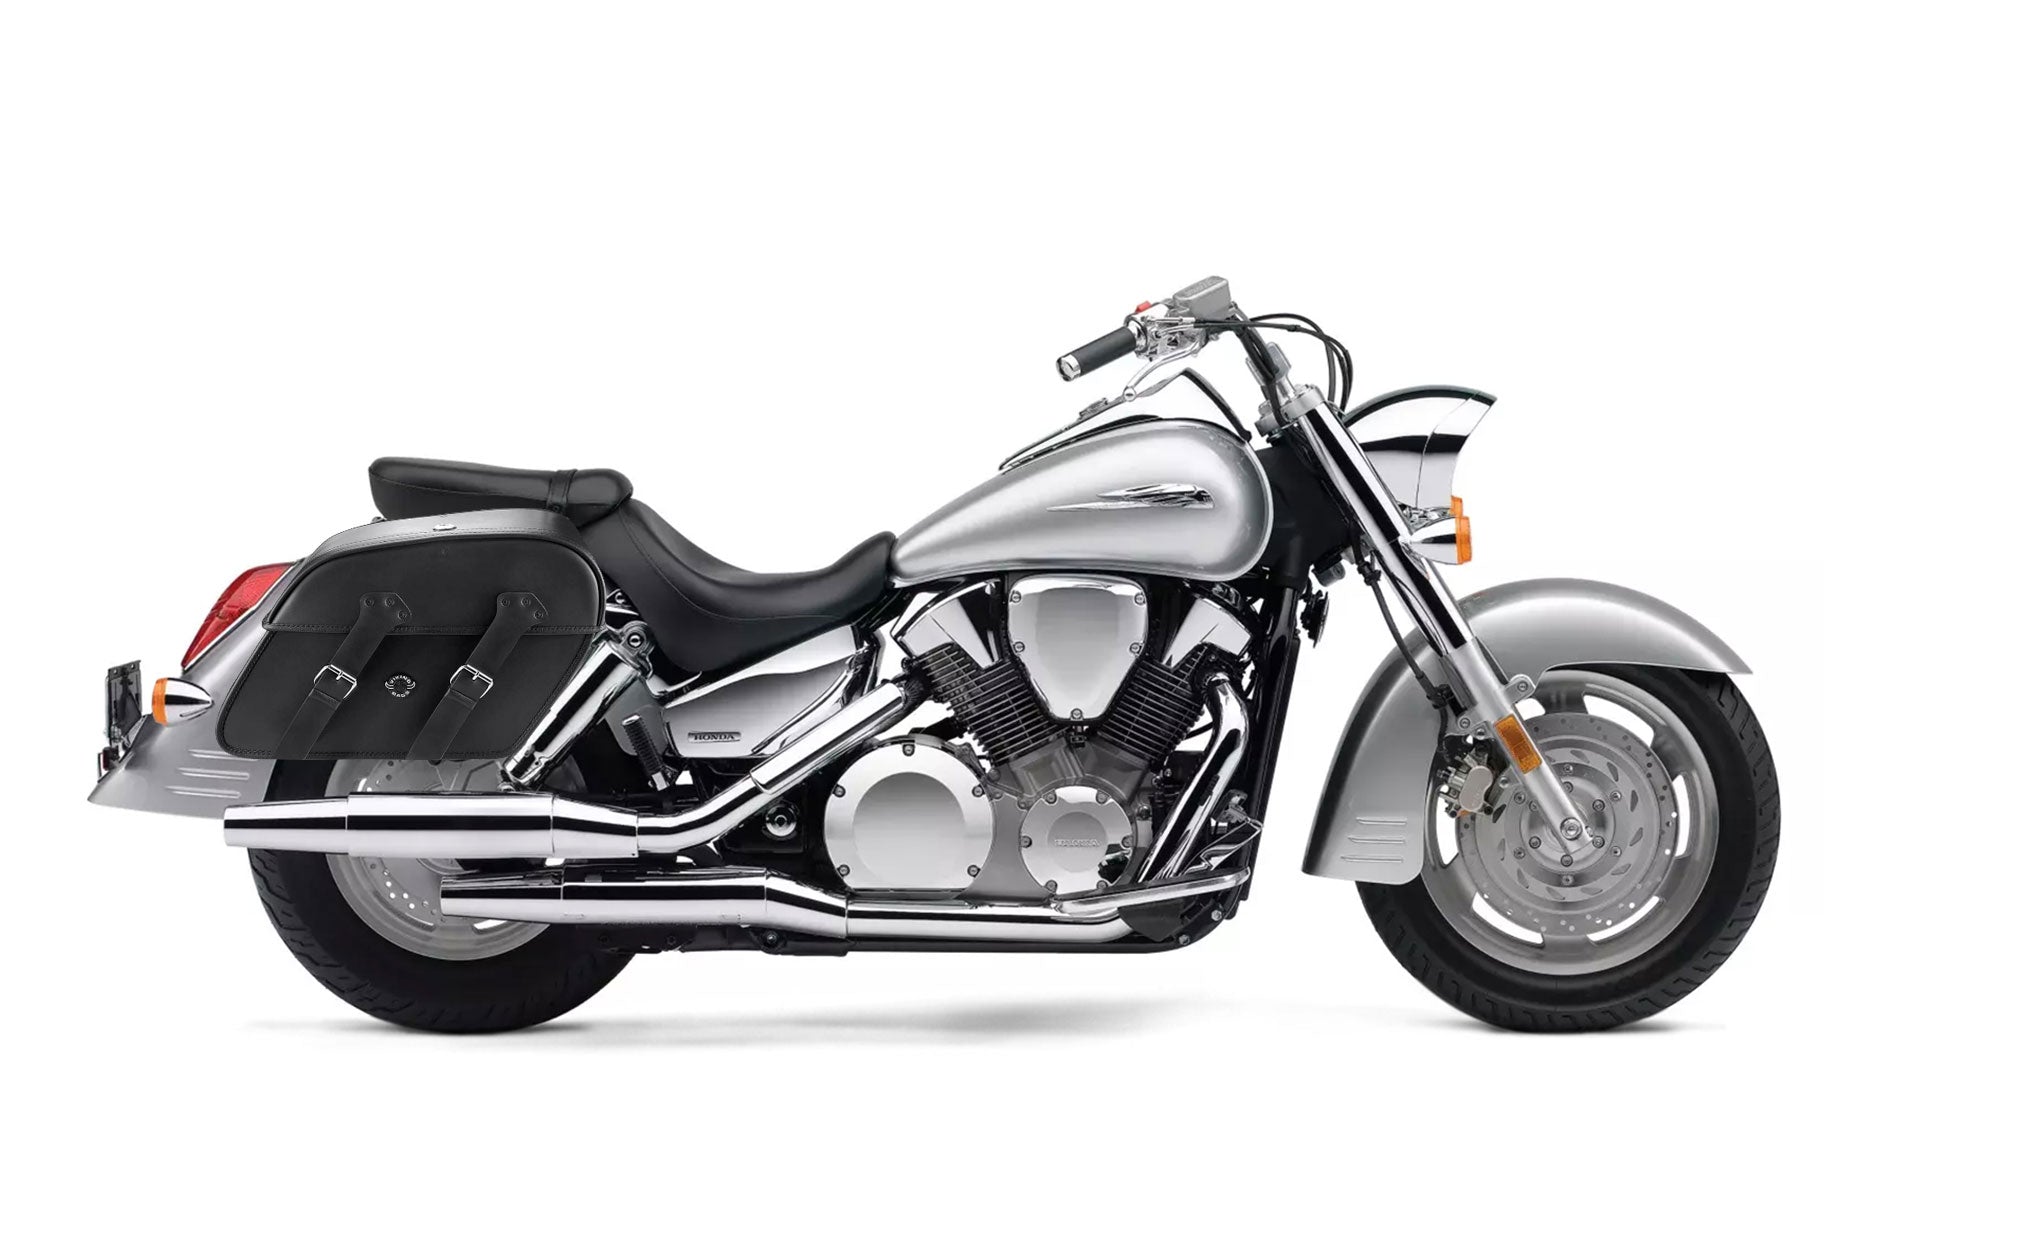 Viking Raven Extra Large Honda Vtx 1300 S Leather Motorcycle Saddlebags on Bike Photo @expand